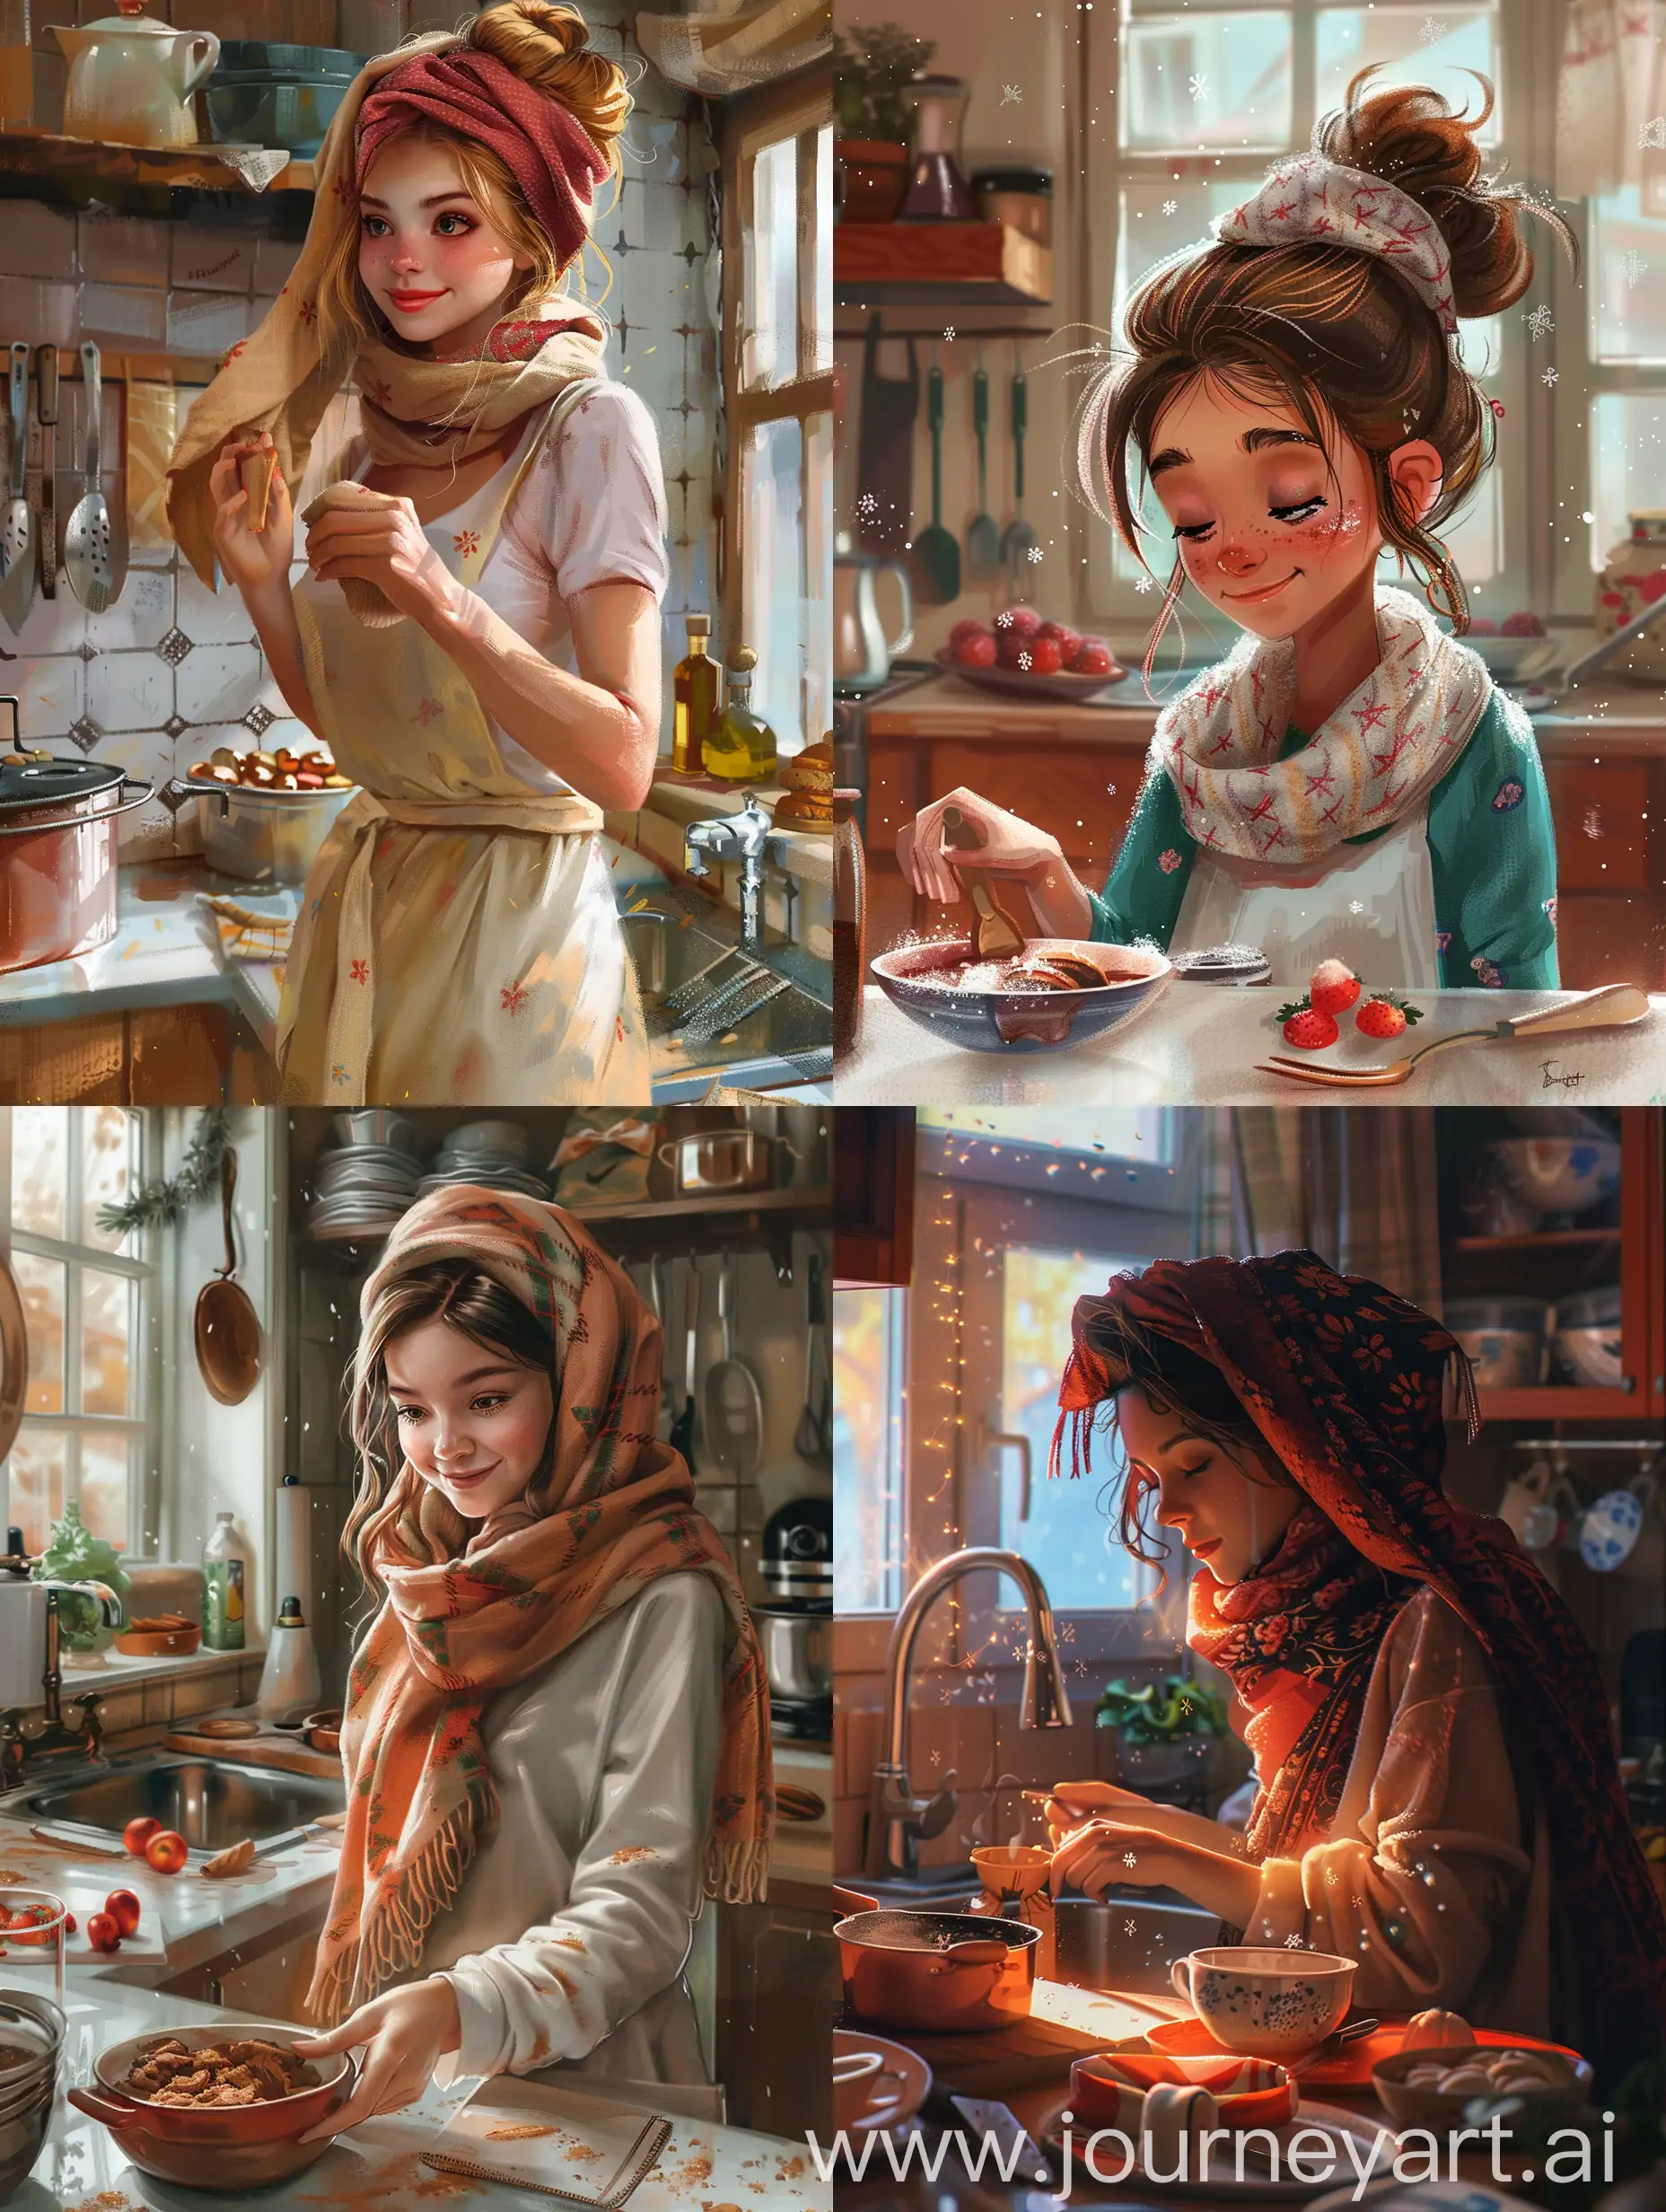 домашний кондитер, готовит сладости, уют, кухня, мило, платок на голове,  арт,
реализм, эстетика, красивое изображение, иллюстрация,